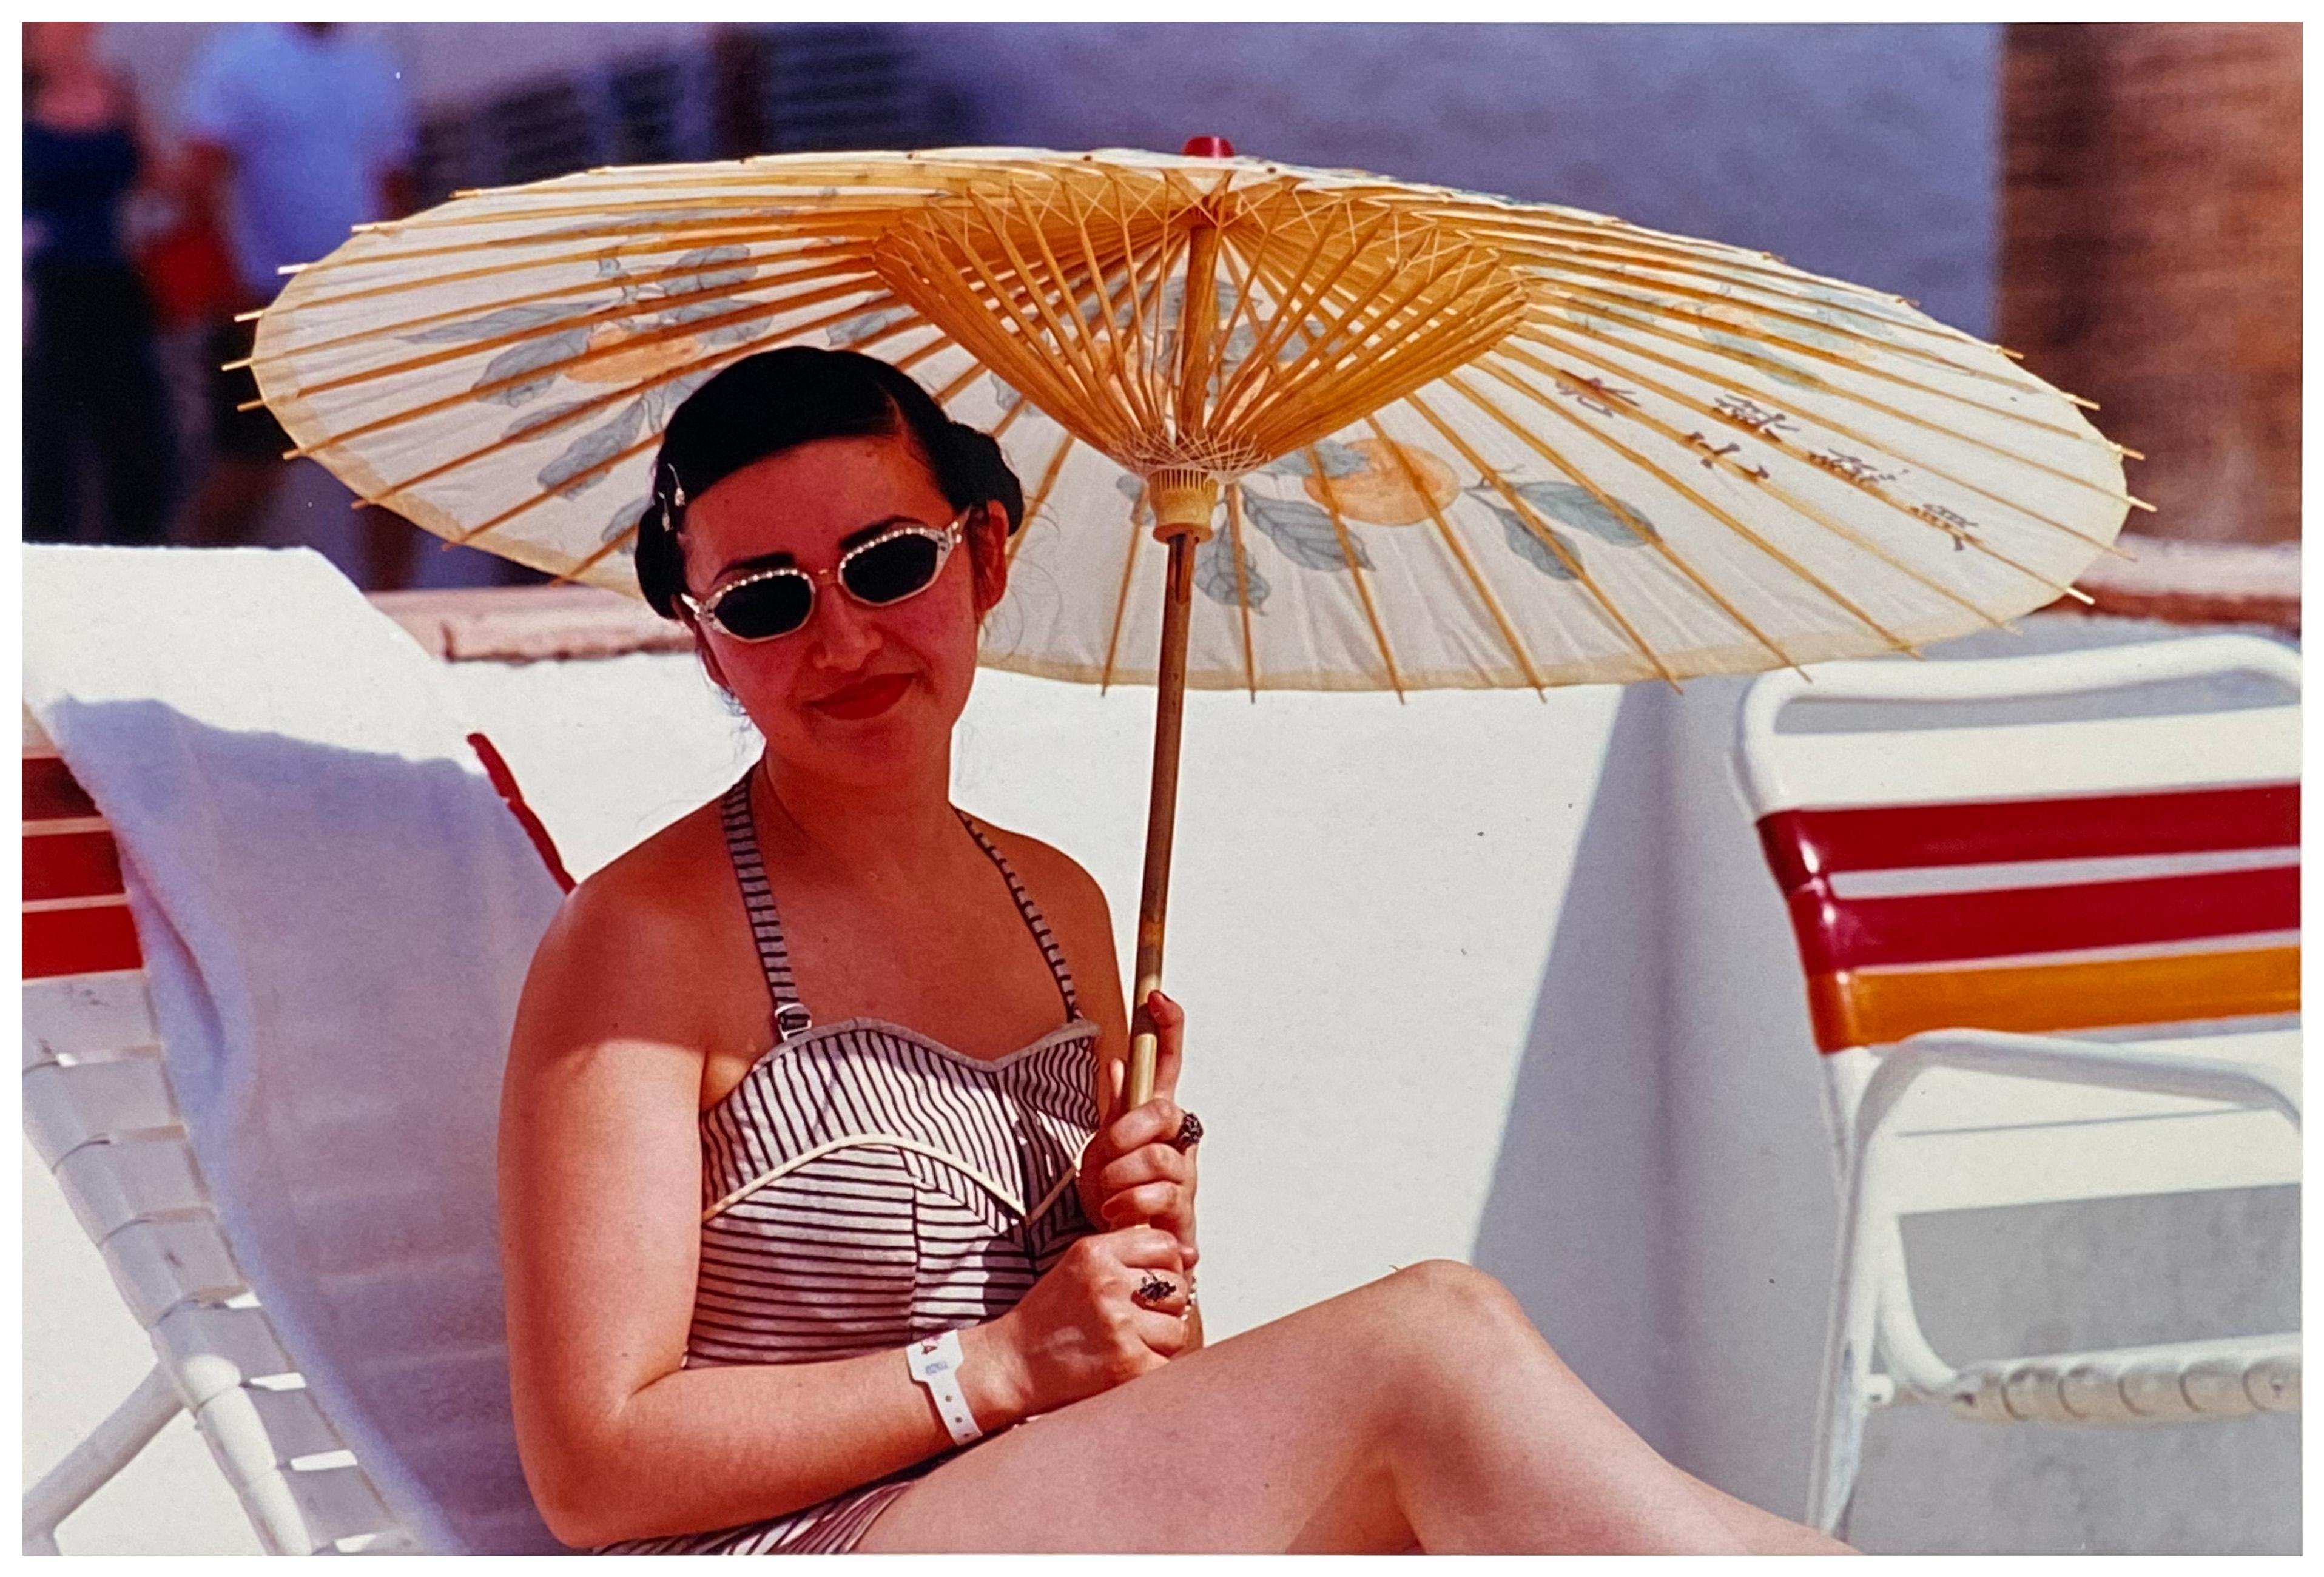 Vintage Poolside, Las Vegas - Contemporary Portrait Color Photography